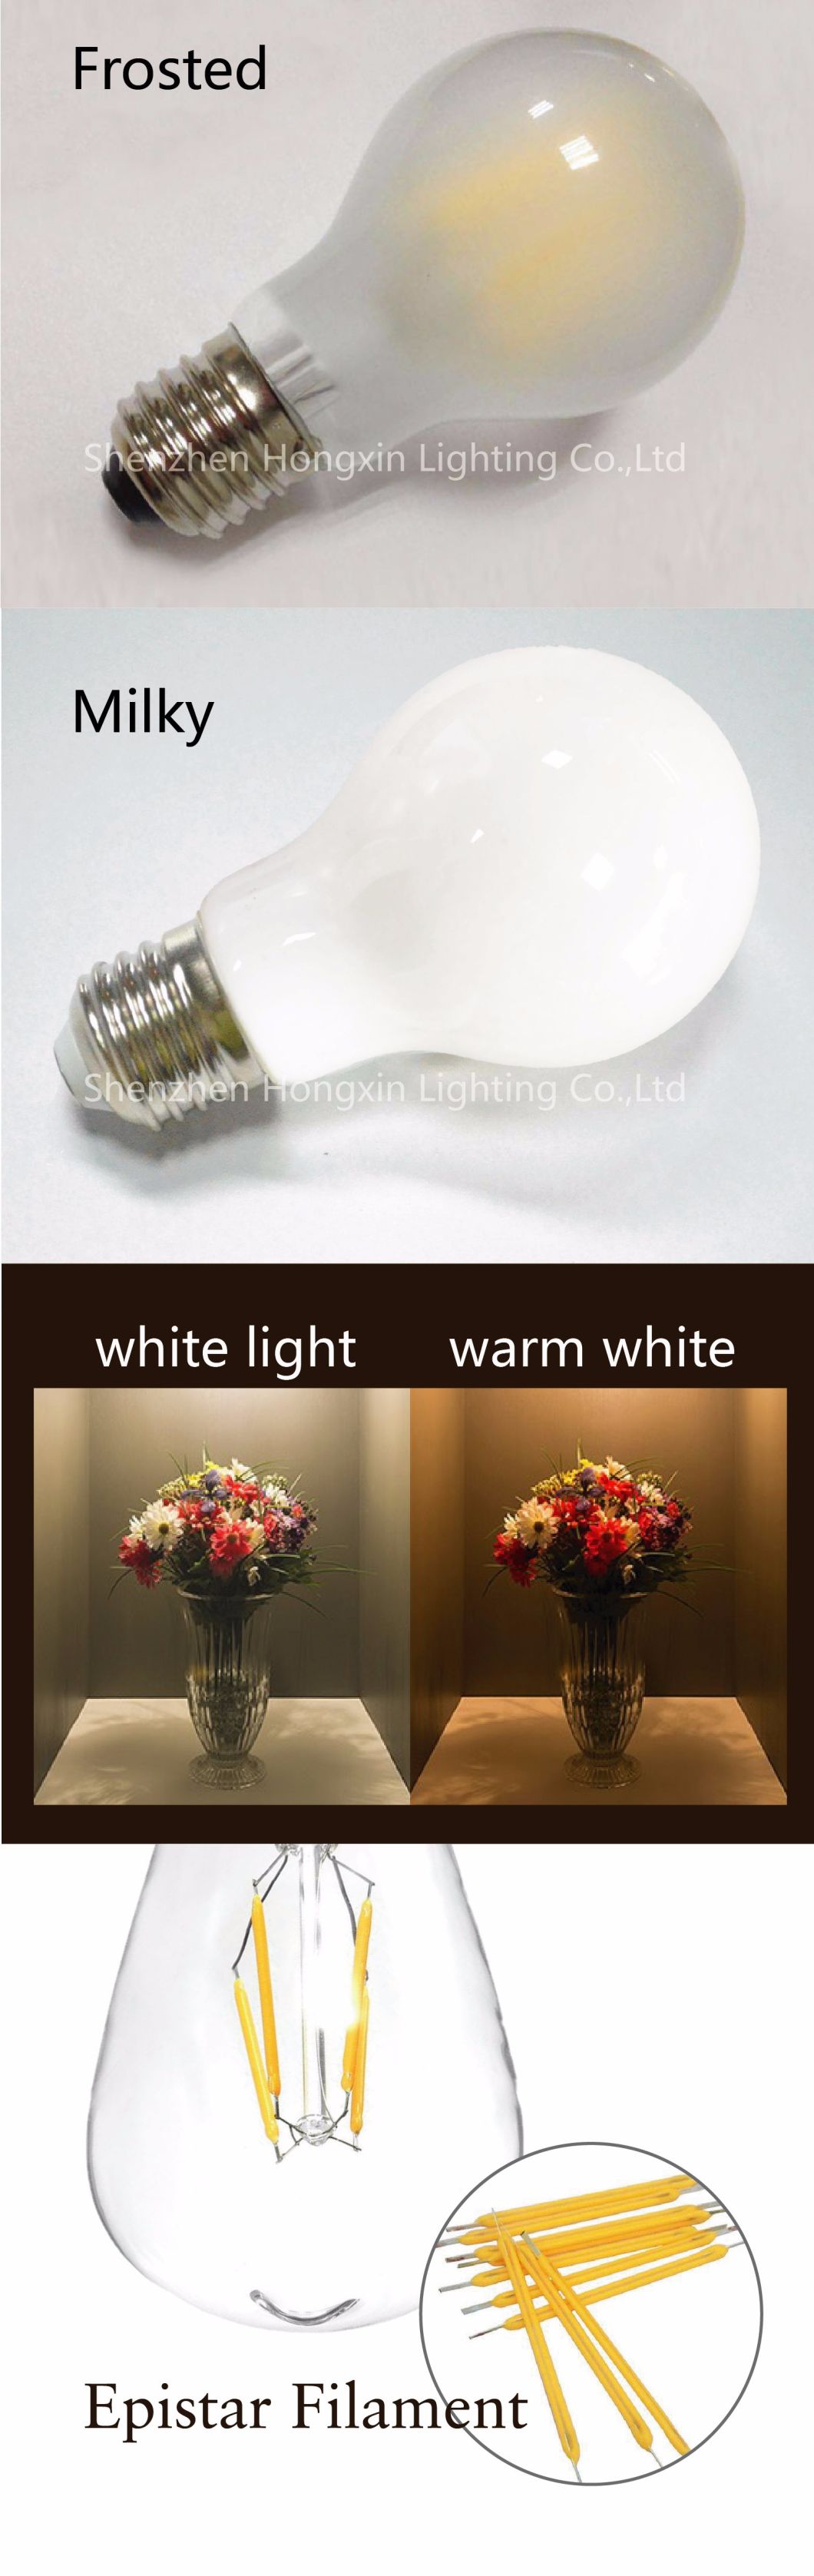 Energy Saving LED Lamp B22 E27 LED Lighting 6W 8W LED Lighting A60 LED Bulb for Indoor